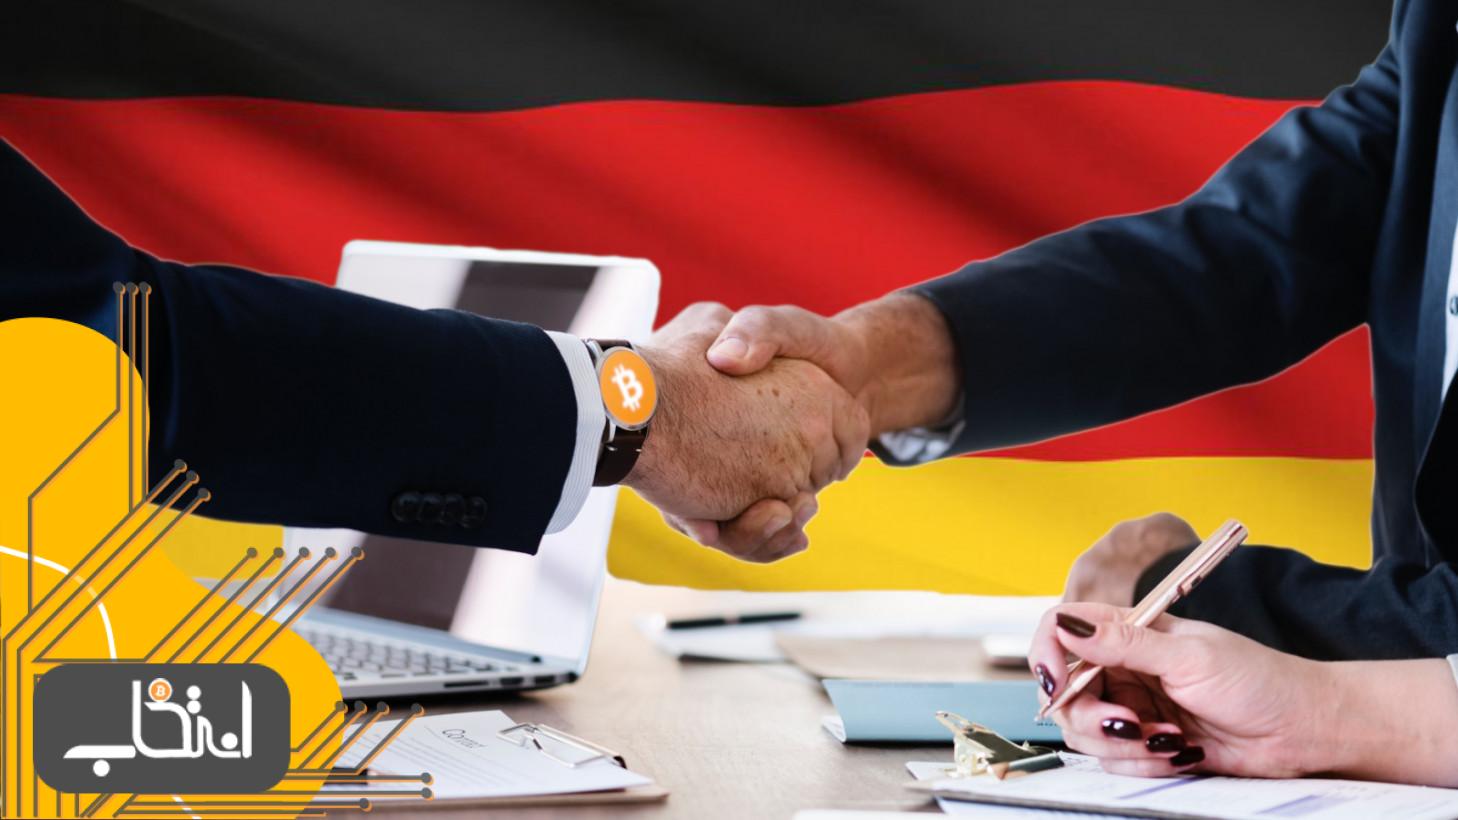 تنها صرافی مجاز بیت کوین در آلمان سال آینده به بانک تبدیل خواهد شد!